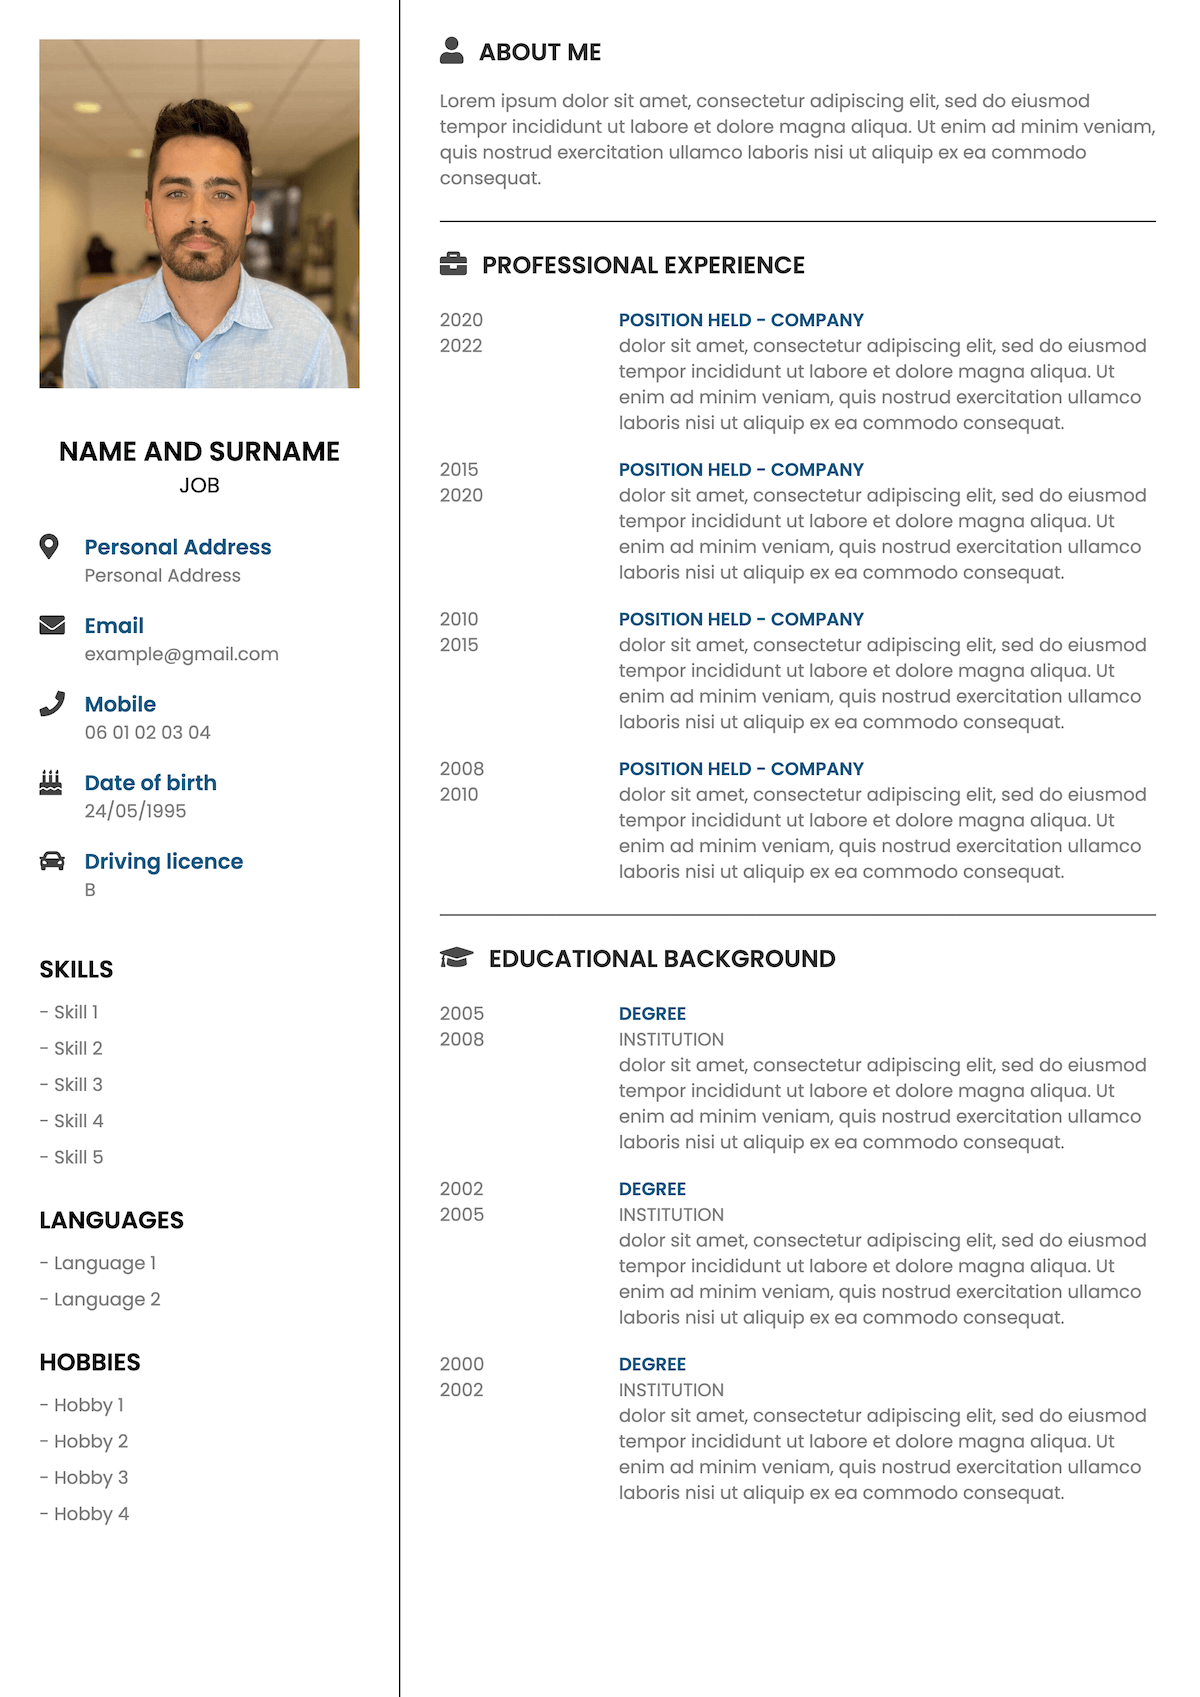 Standard CV template